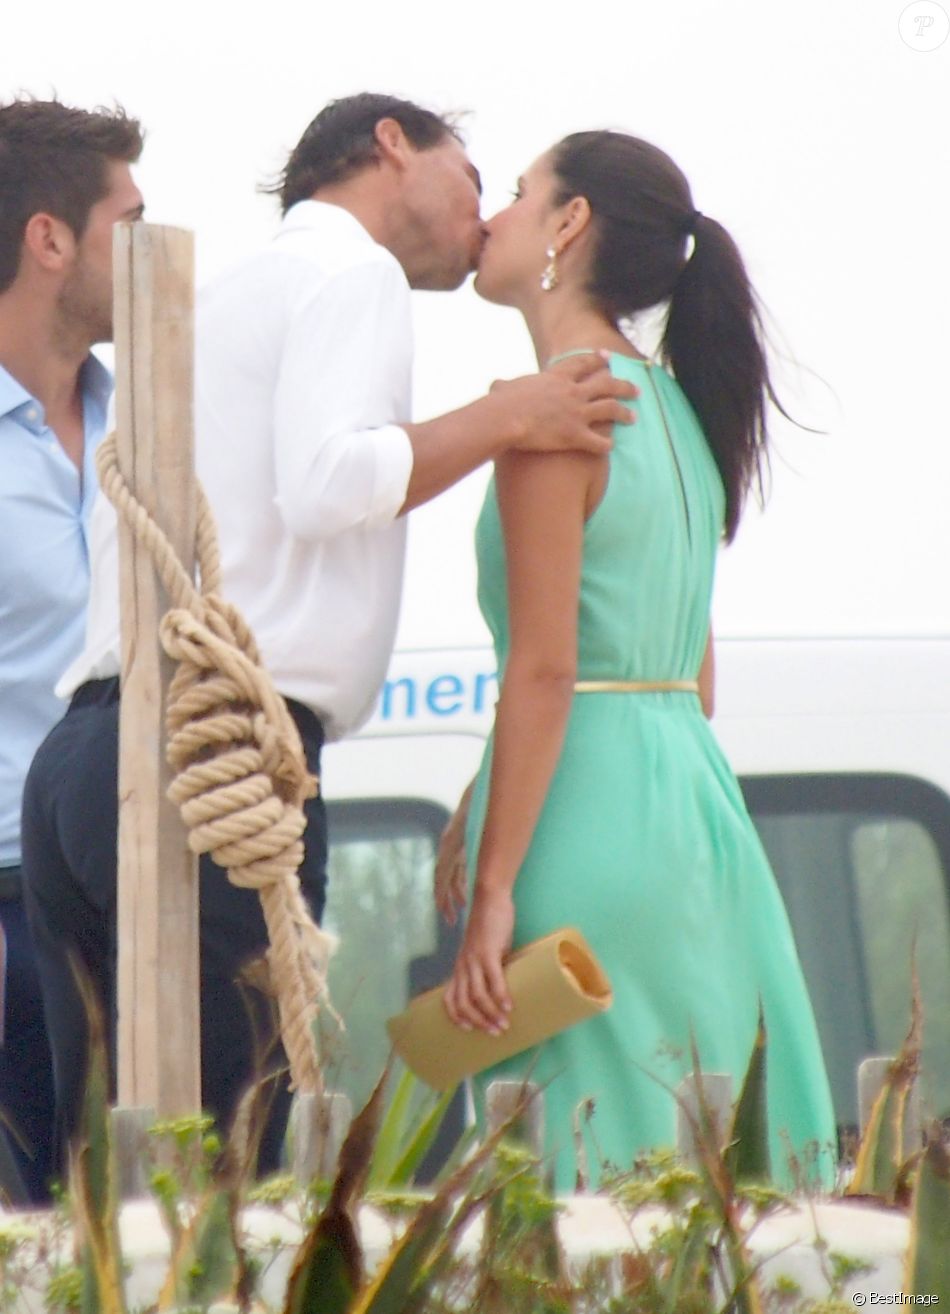 Rafael Nadal et Xisca (Mery) Perello fiancés : enfin le mariage